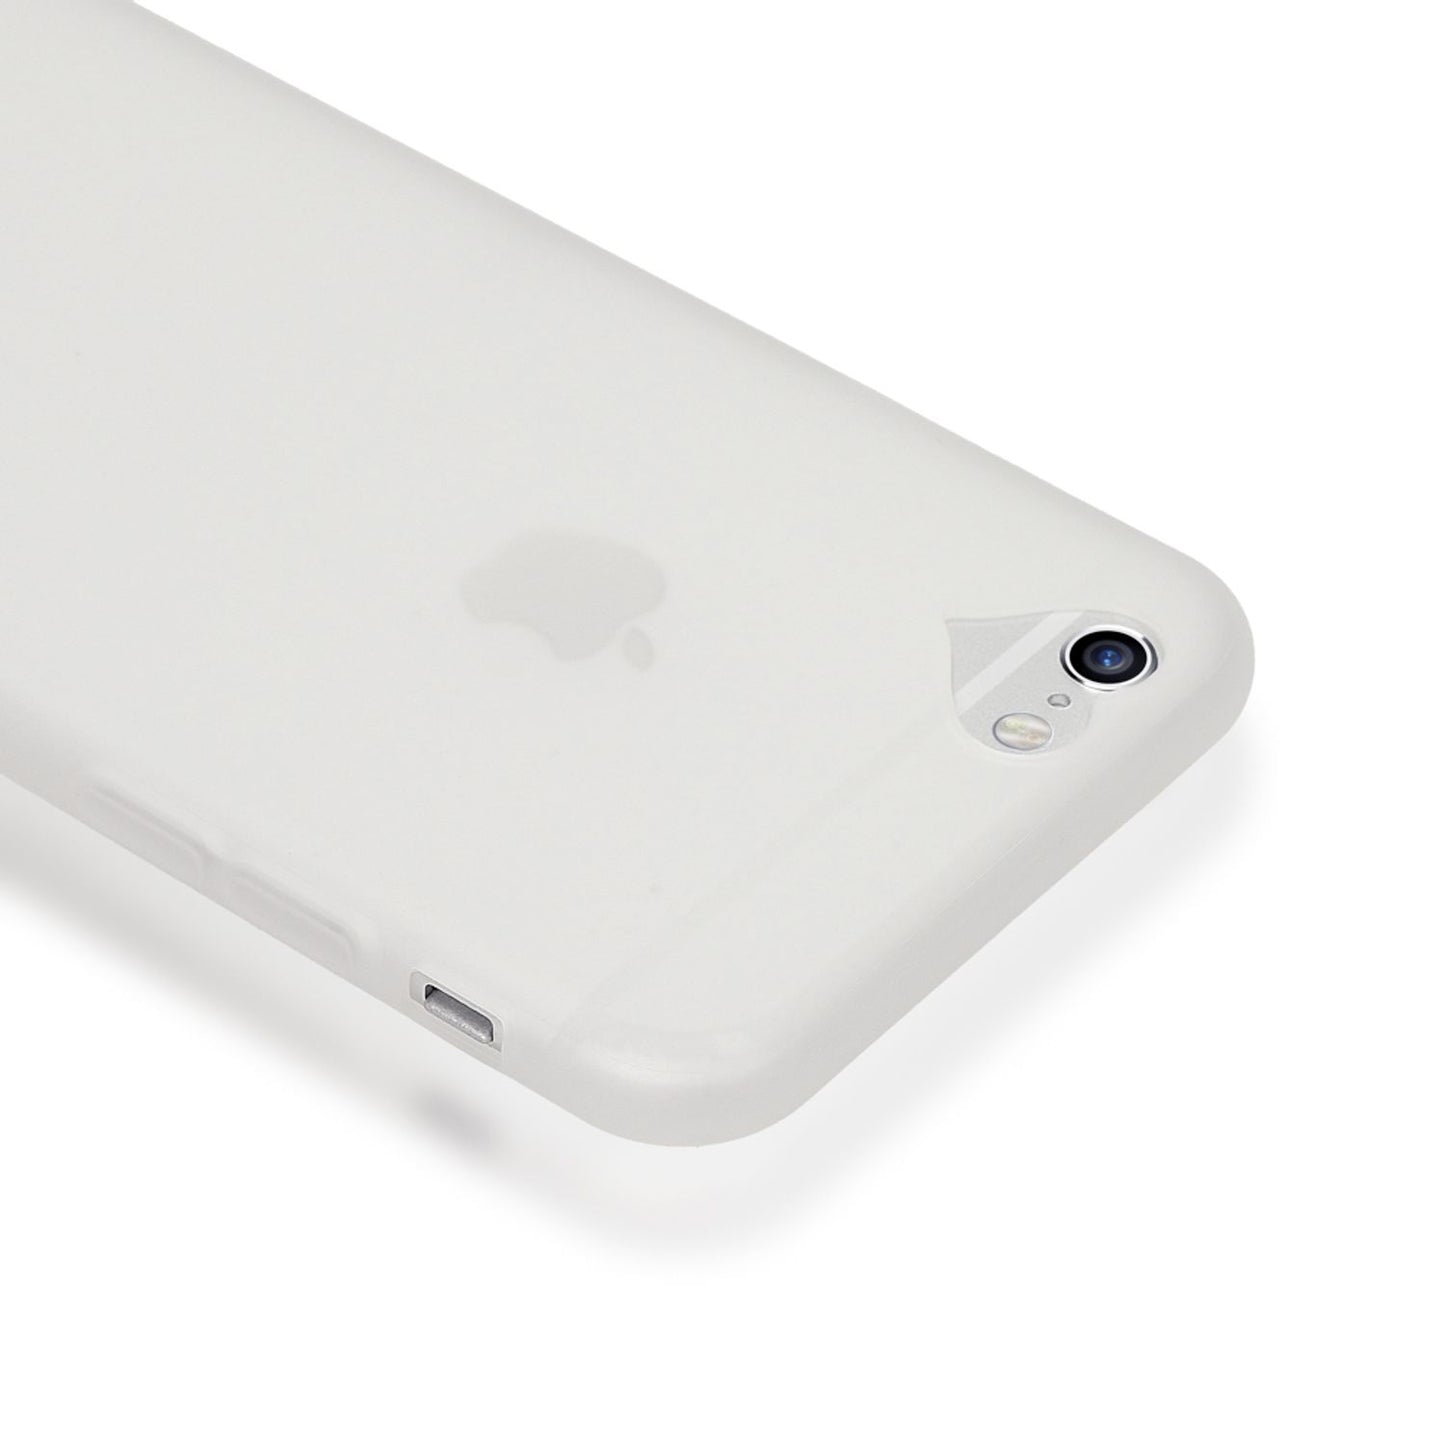 iPhone 6 6S Hülle Herz Handyhülle von NALIA, Silikon Case Schutzhülle Soft Cover